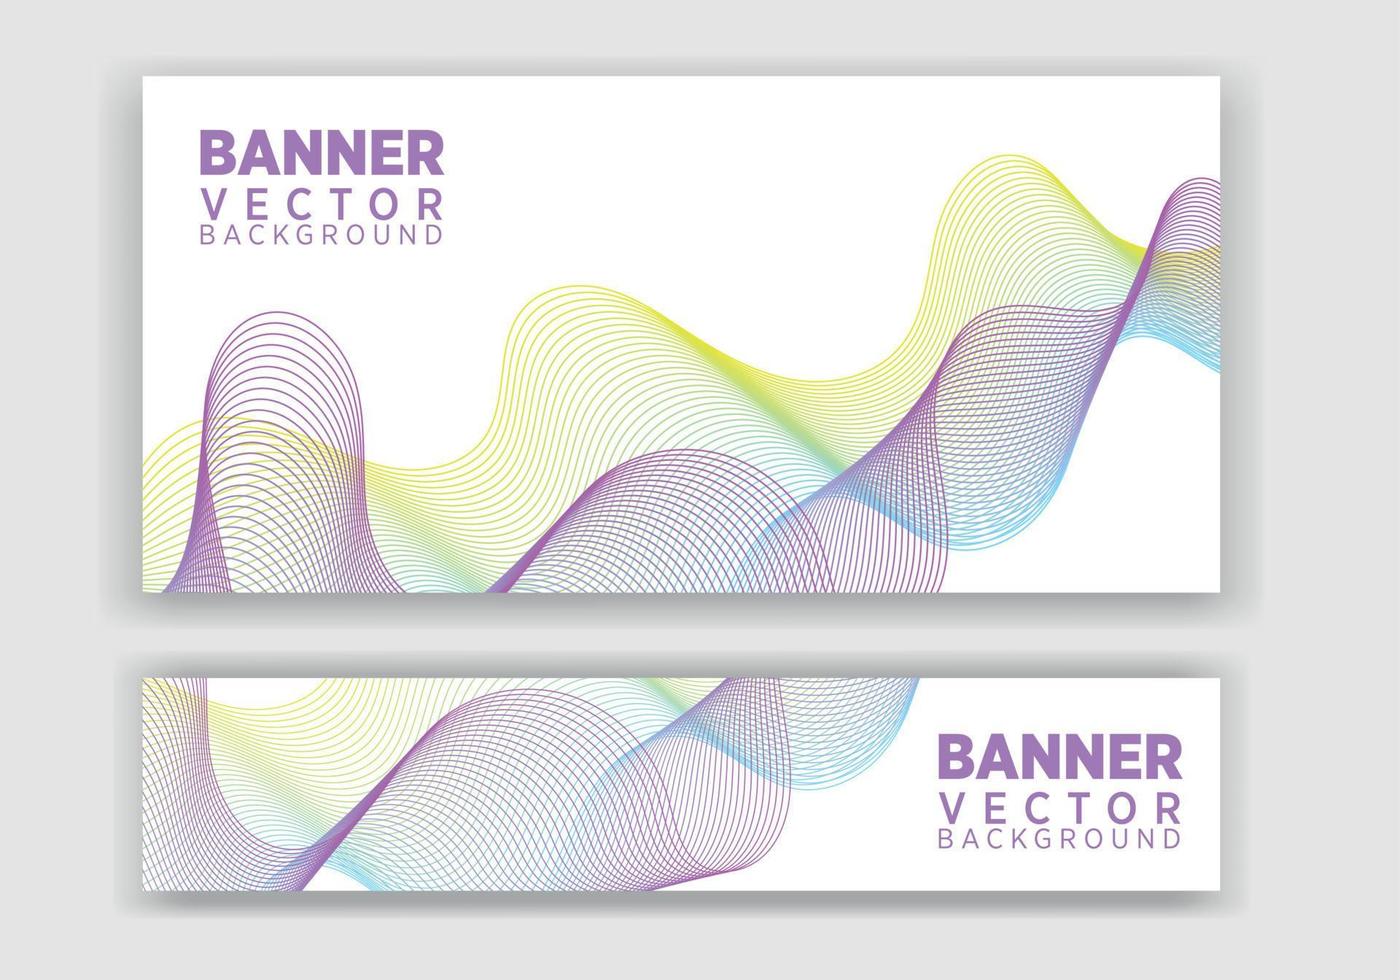 Vektor abstrakte Grafikdesign-Banner. Vektor horizontale Banner-Vorlage, abstraktes Design.